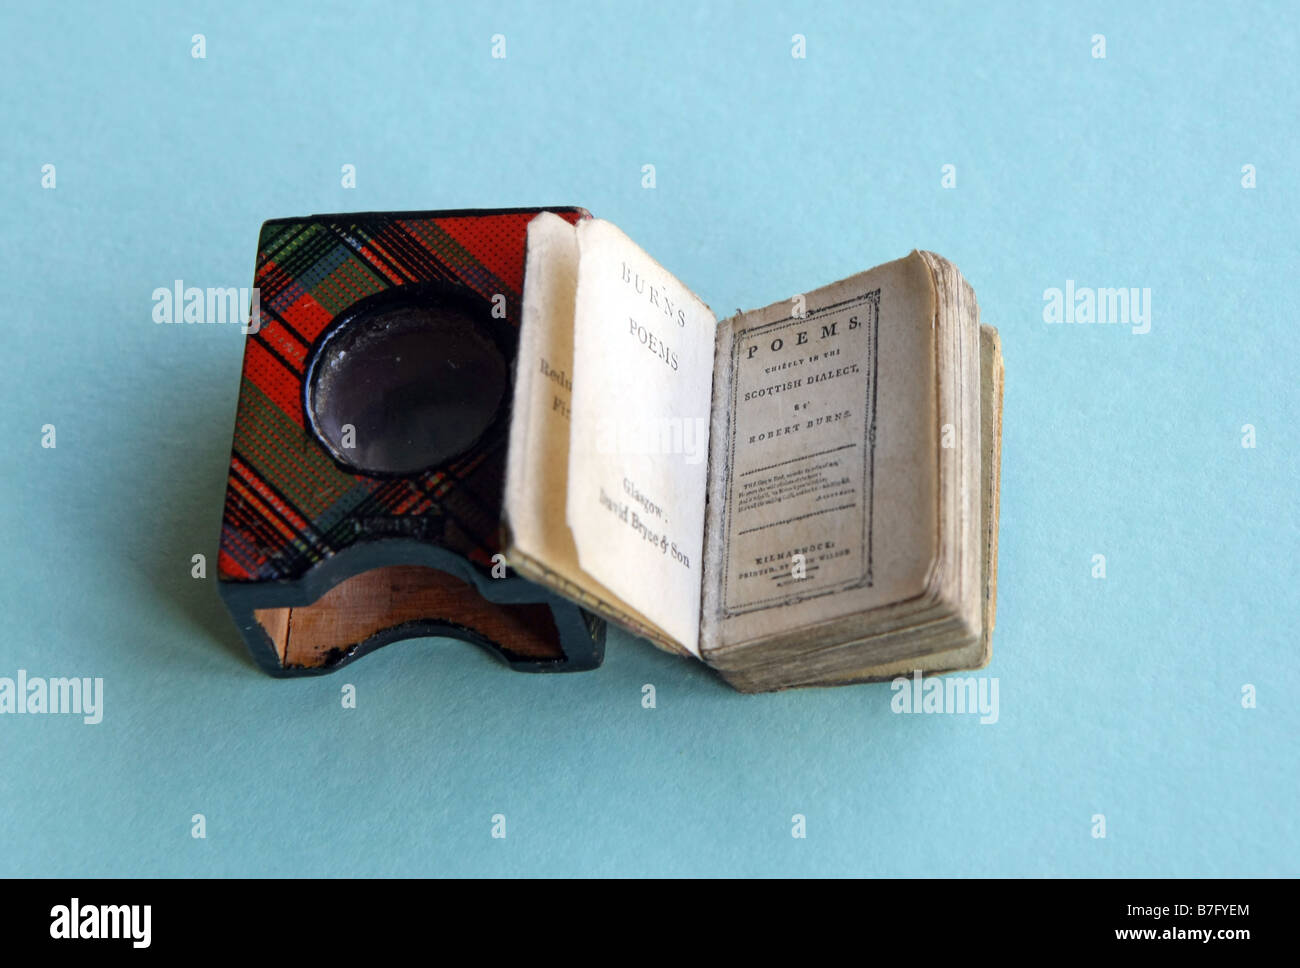 Winzige Buch von Robert Burns Gedichte, in einem Fall mit Vergrößerungsglas Objektiv gebaut. Stockfoto